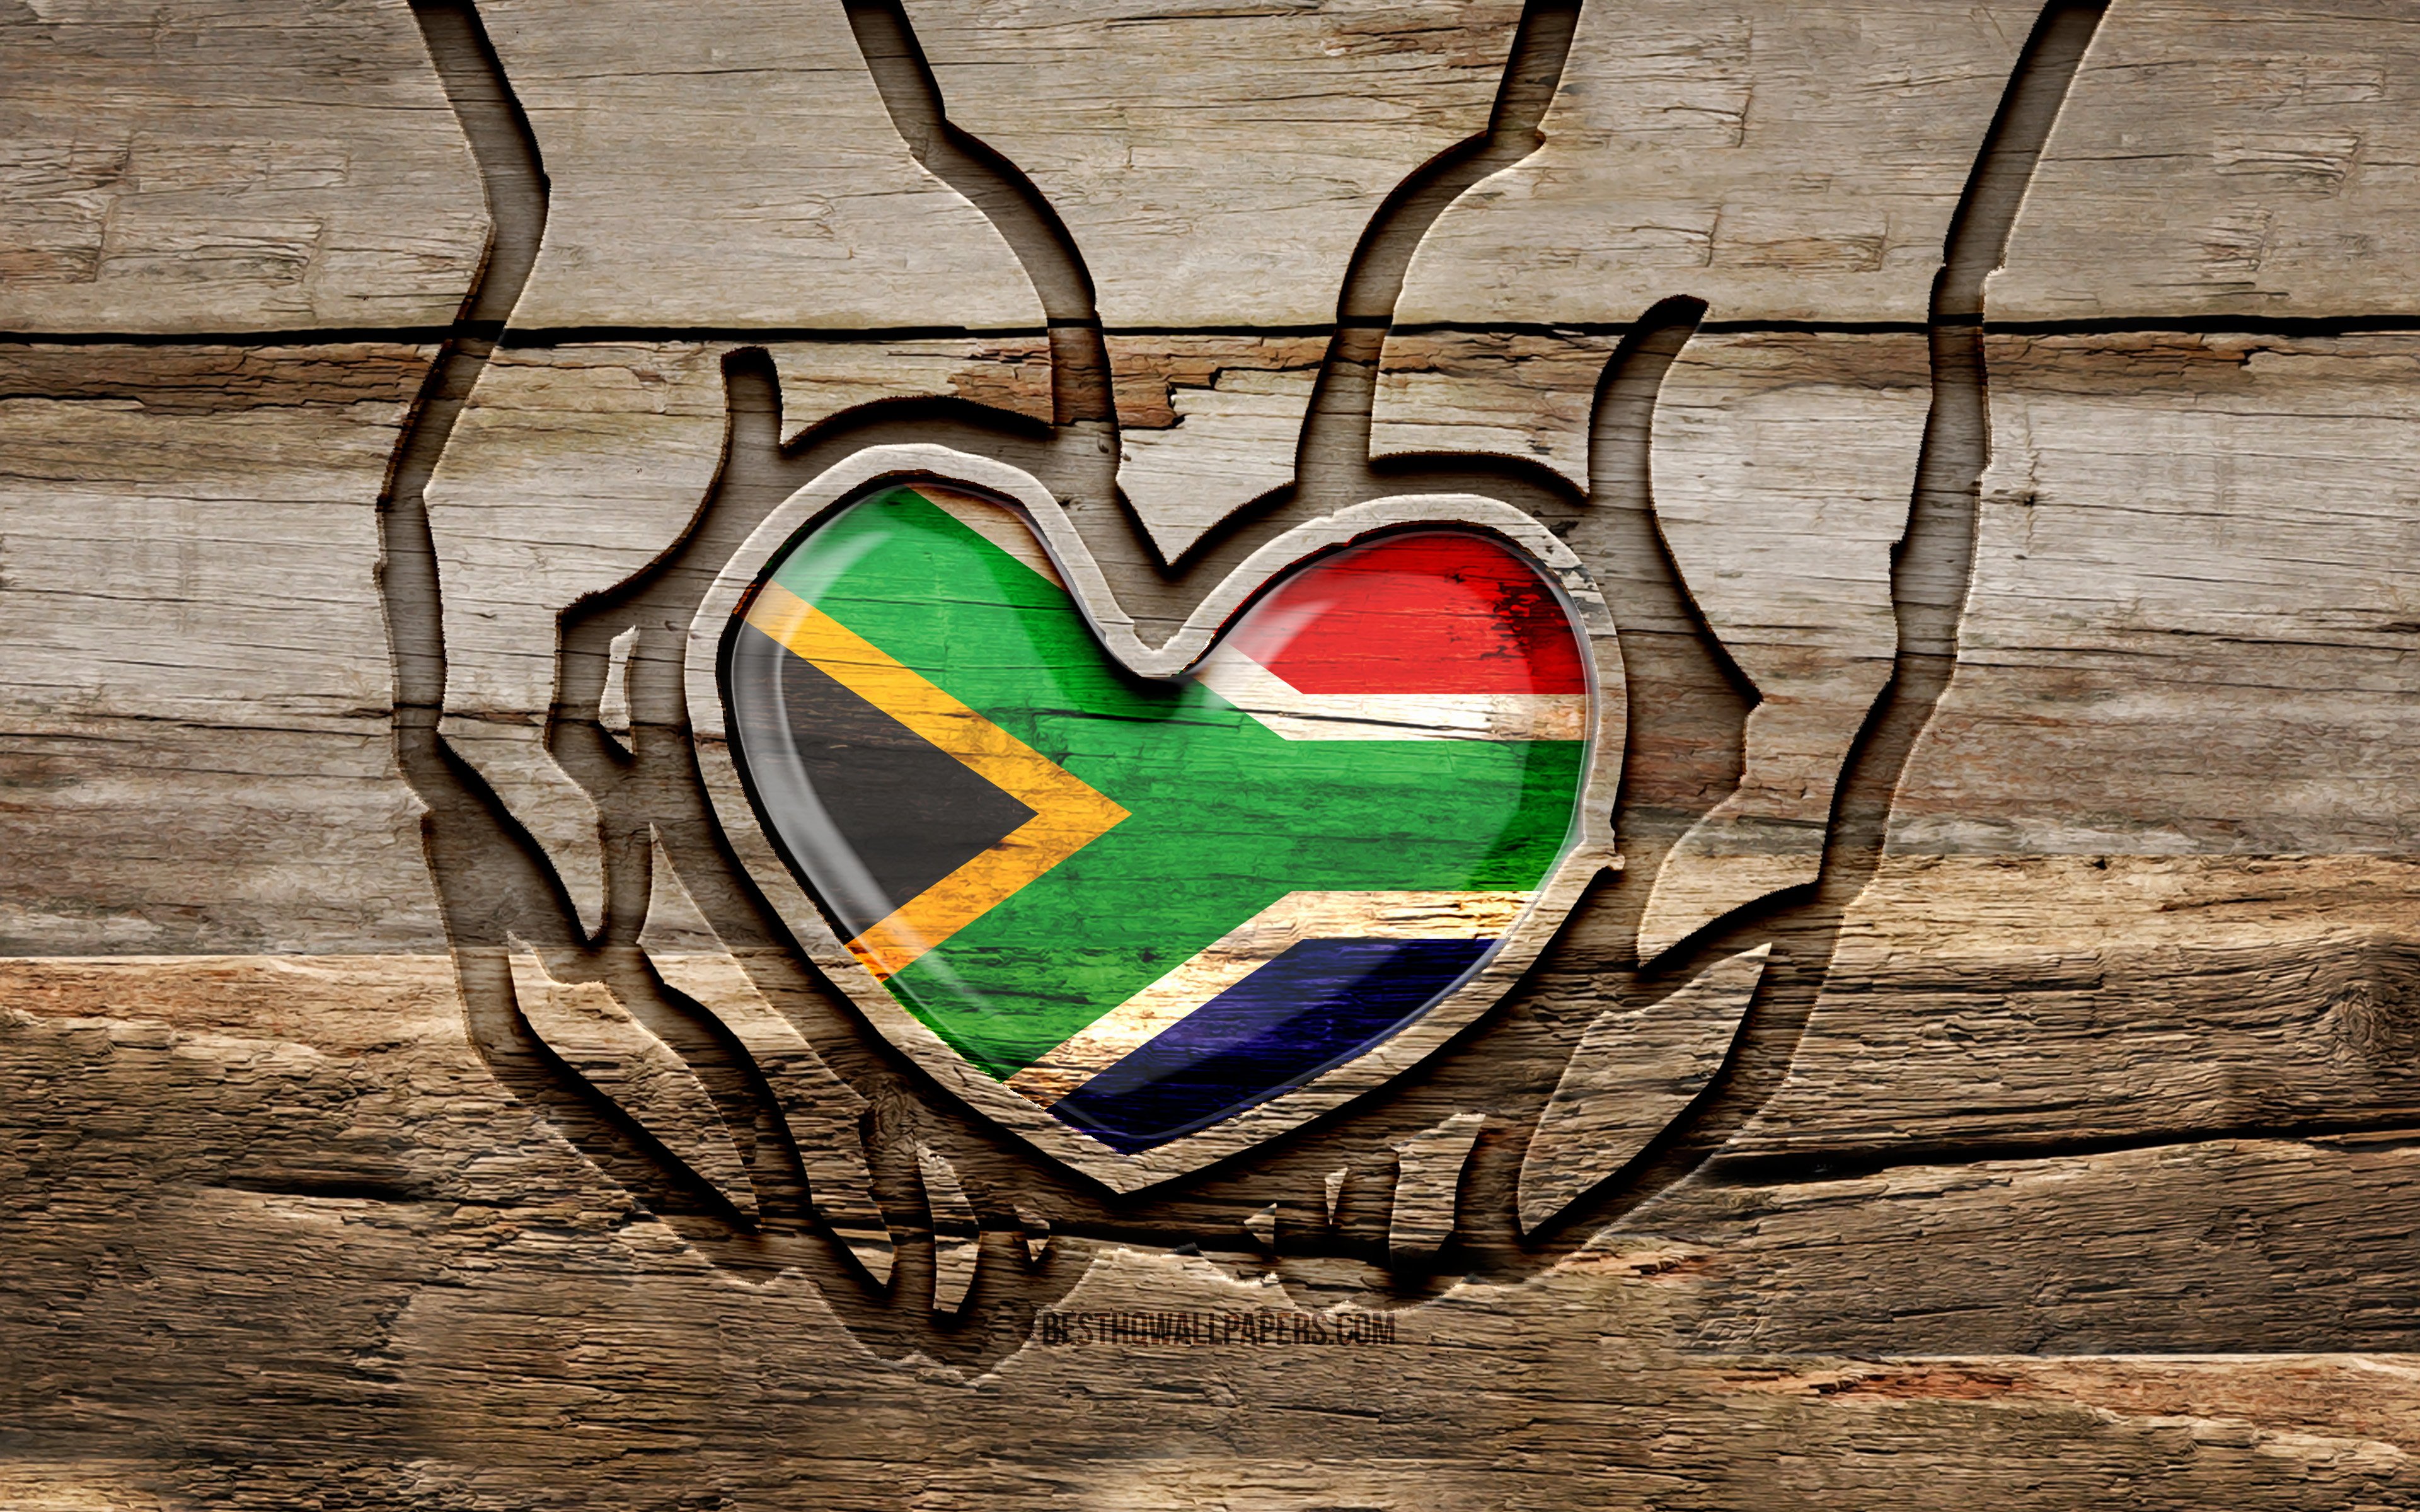 ダウンロード画像 私は南アフリカが大好きです 4k 木彫りの手 南アフリカの日 南アフリカ共和国の国旗 気をつけましょう南アフリカ共和国 クリエイティブ 南アフリカの国旗 手に南アフリカの旗 木彫 アフリカ諸国 画面の解像度 3840x2400 壁紙デスクトップ上